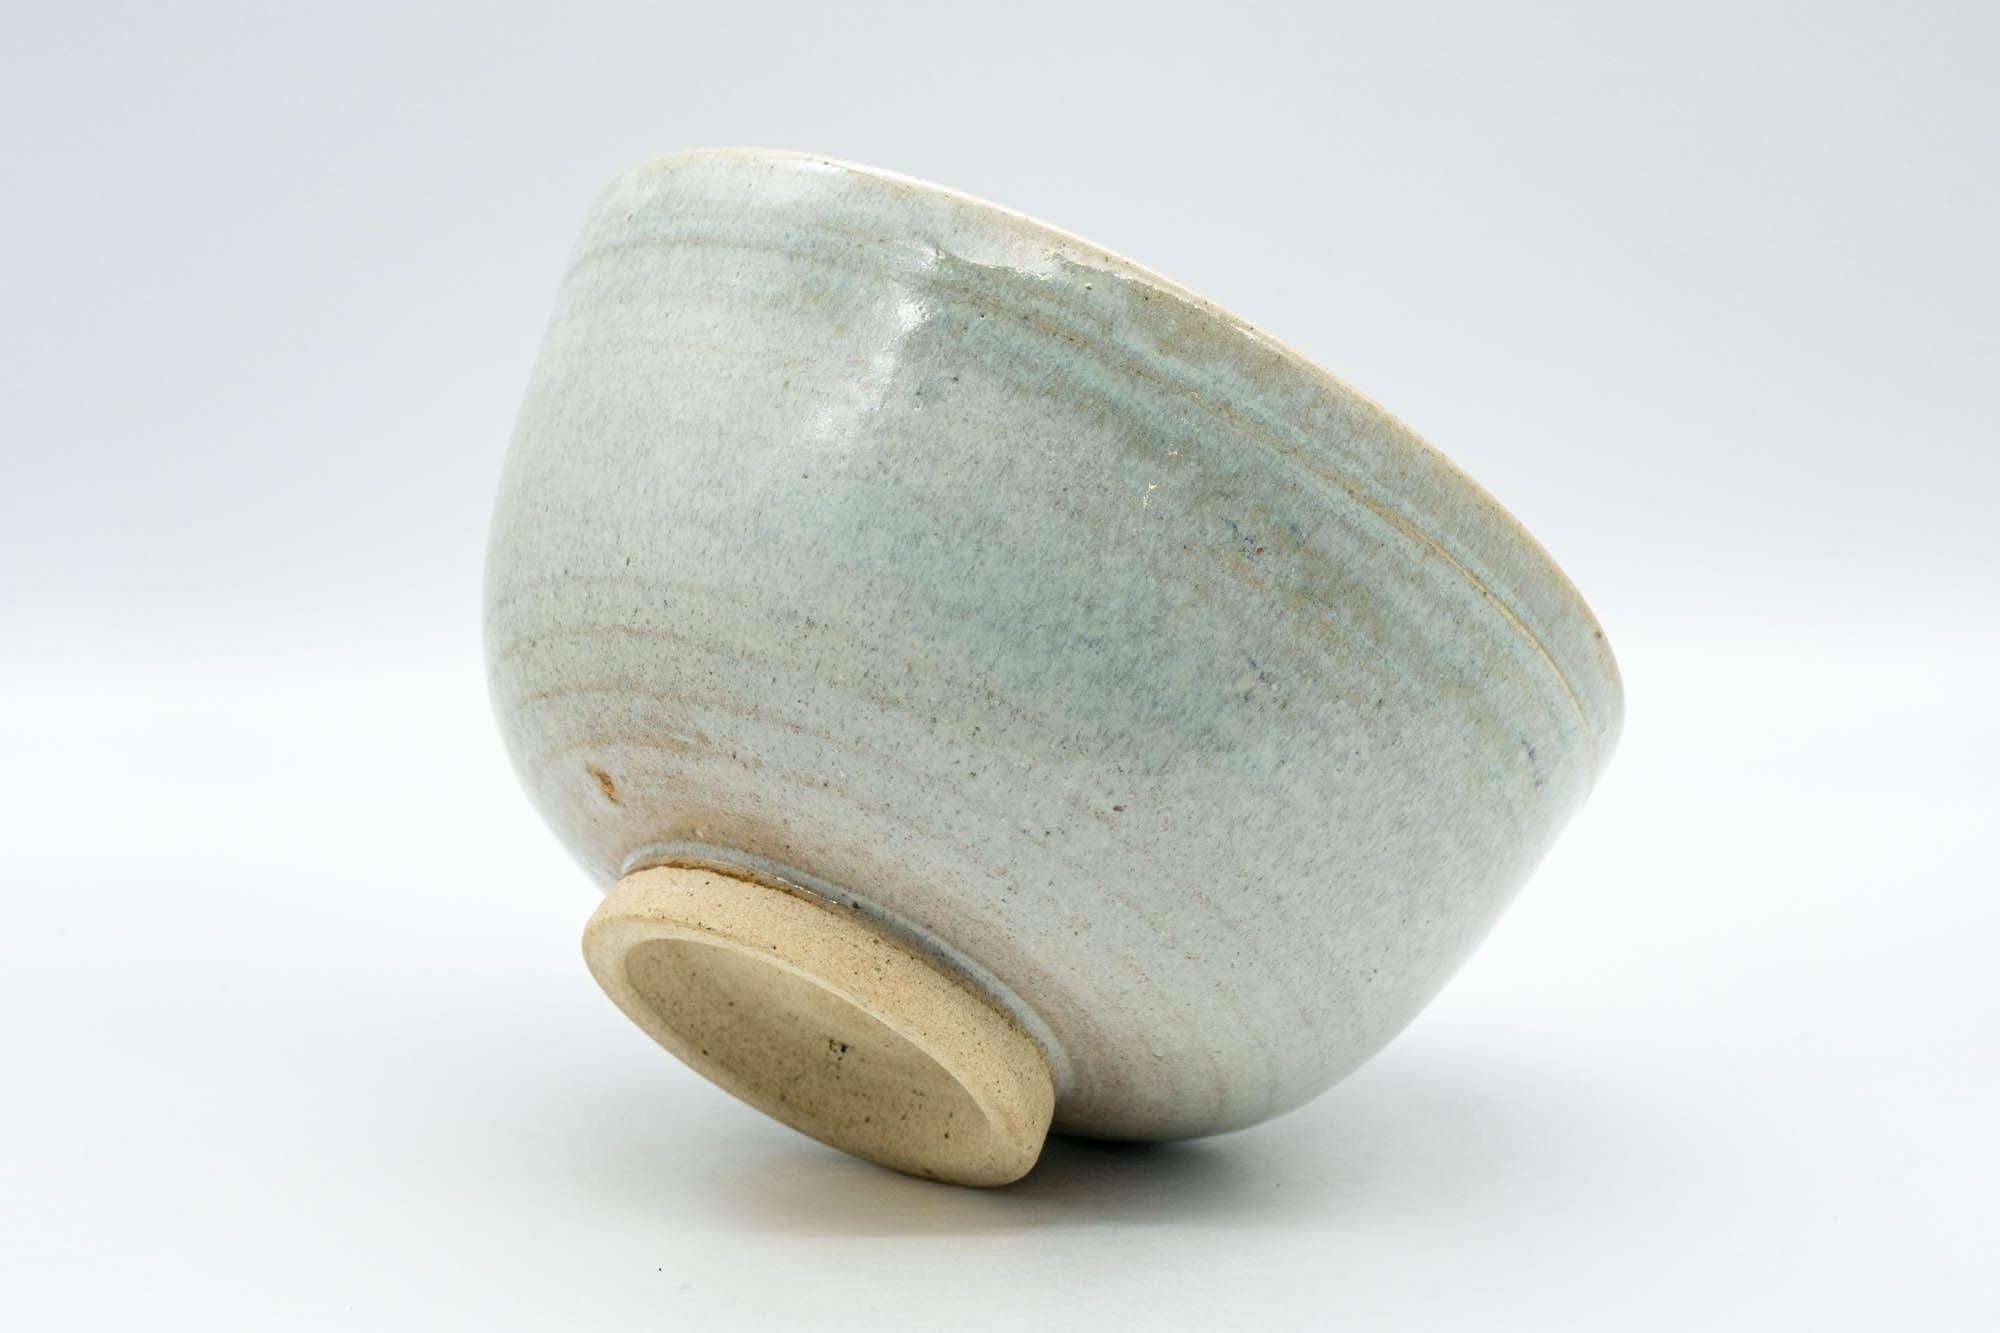 Japanese Matcha Bowl - White Drip-Glazed Chawan - 400ml - Tezumi